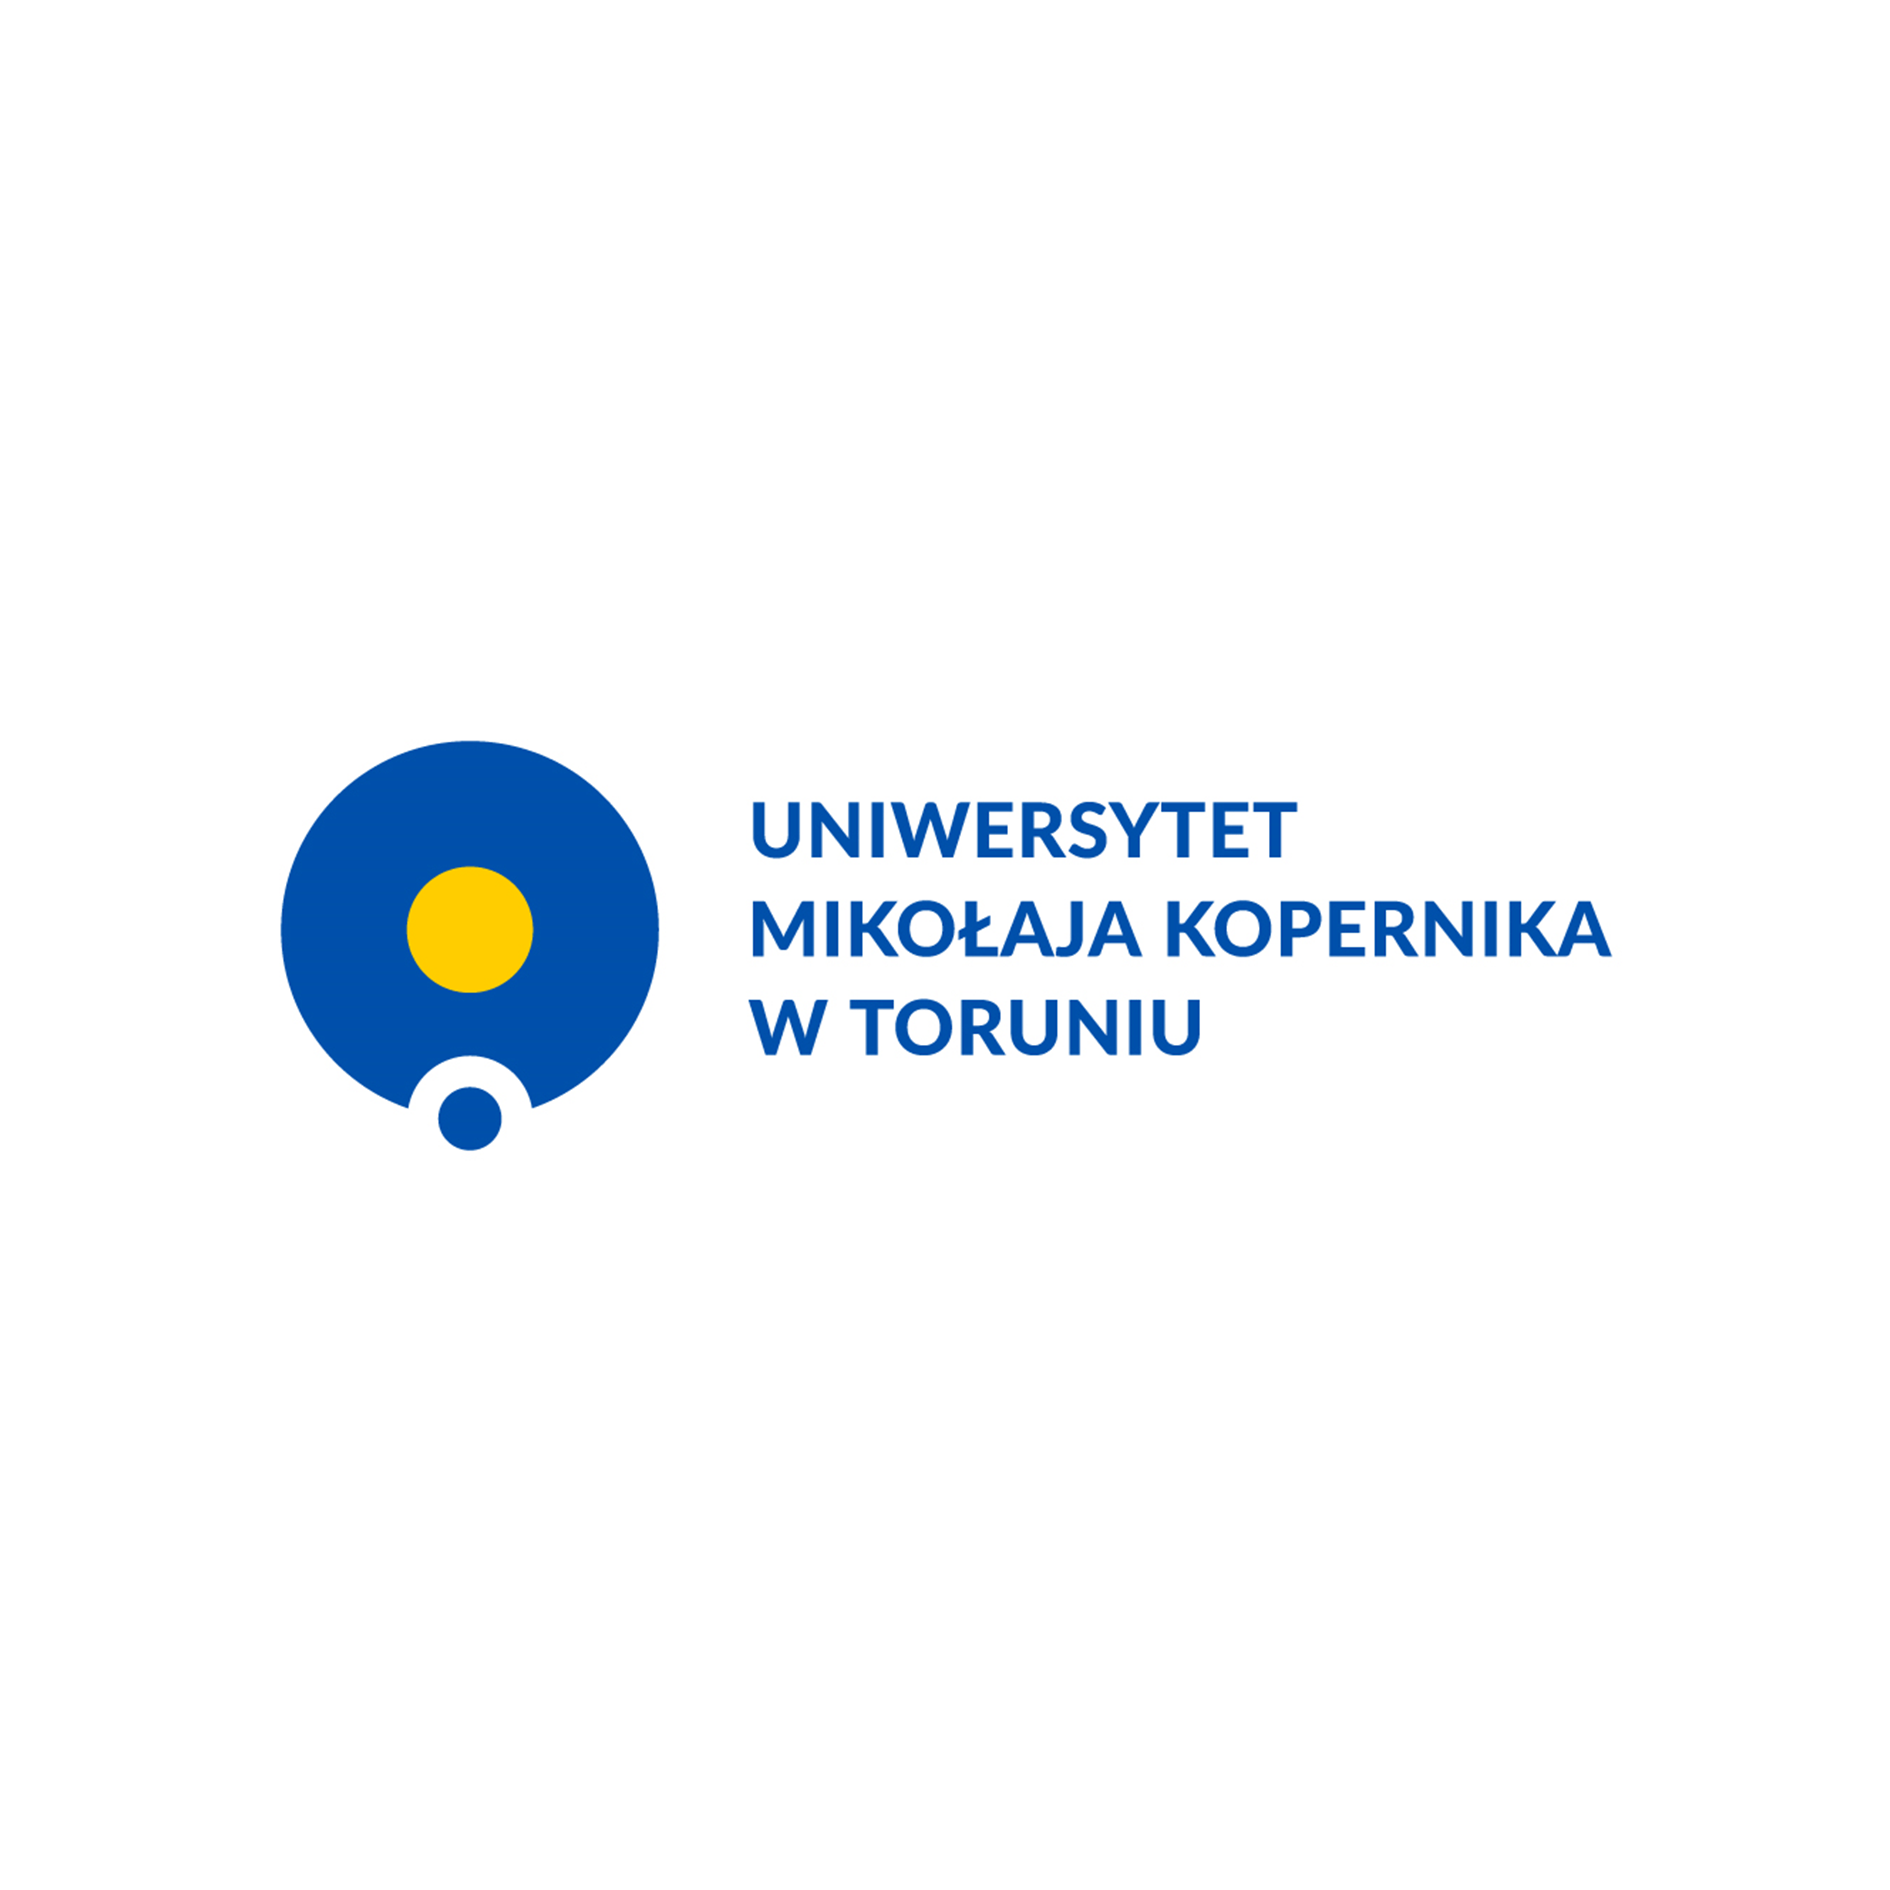 Instytut Fizyki na Uniwersytecie Mikołaja Kopernika w Toruniu specjalizuje się w fotonice, fizyce kwantowej, fizyce atomowo-molekularnej i ich zastosowaniach.